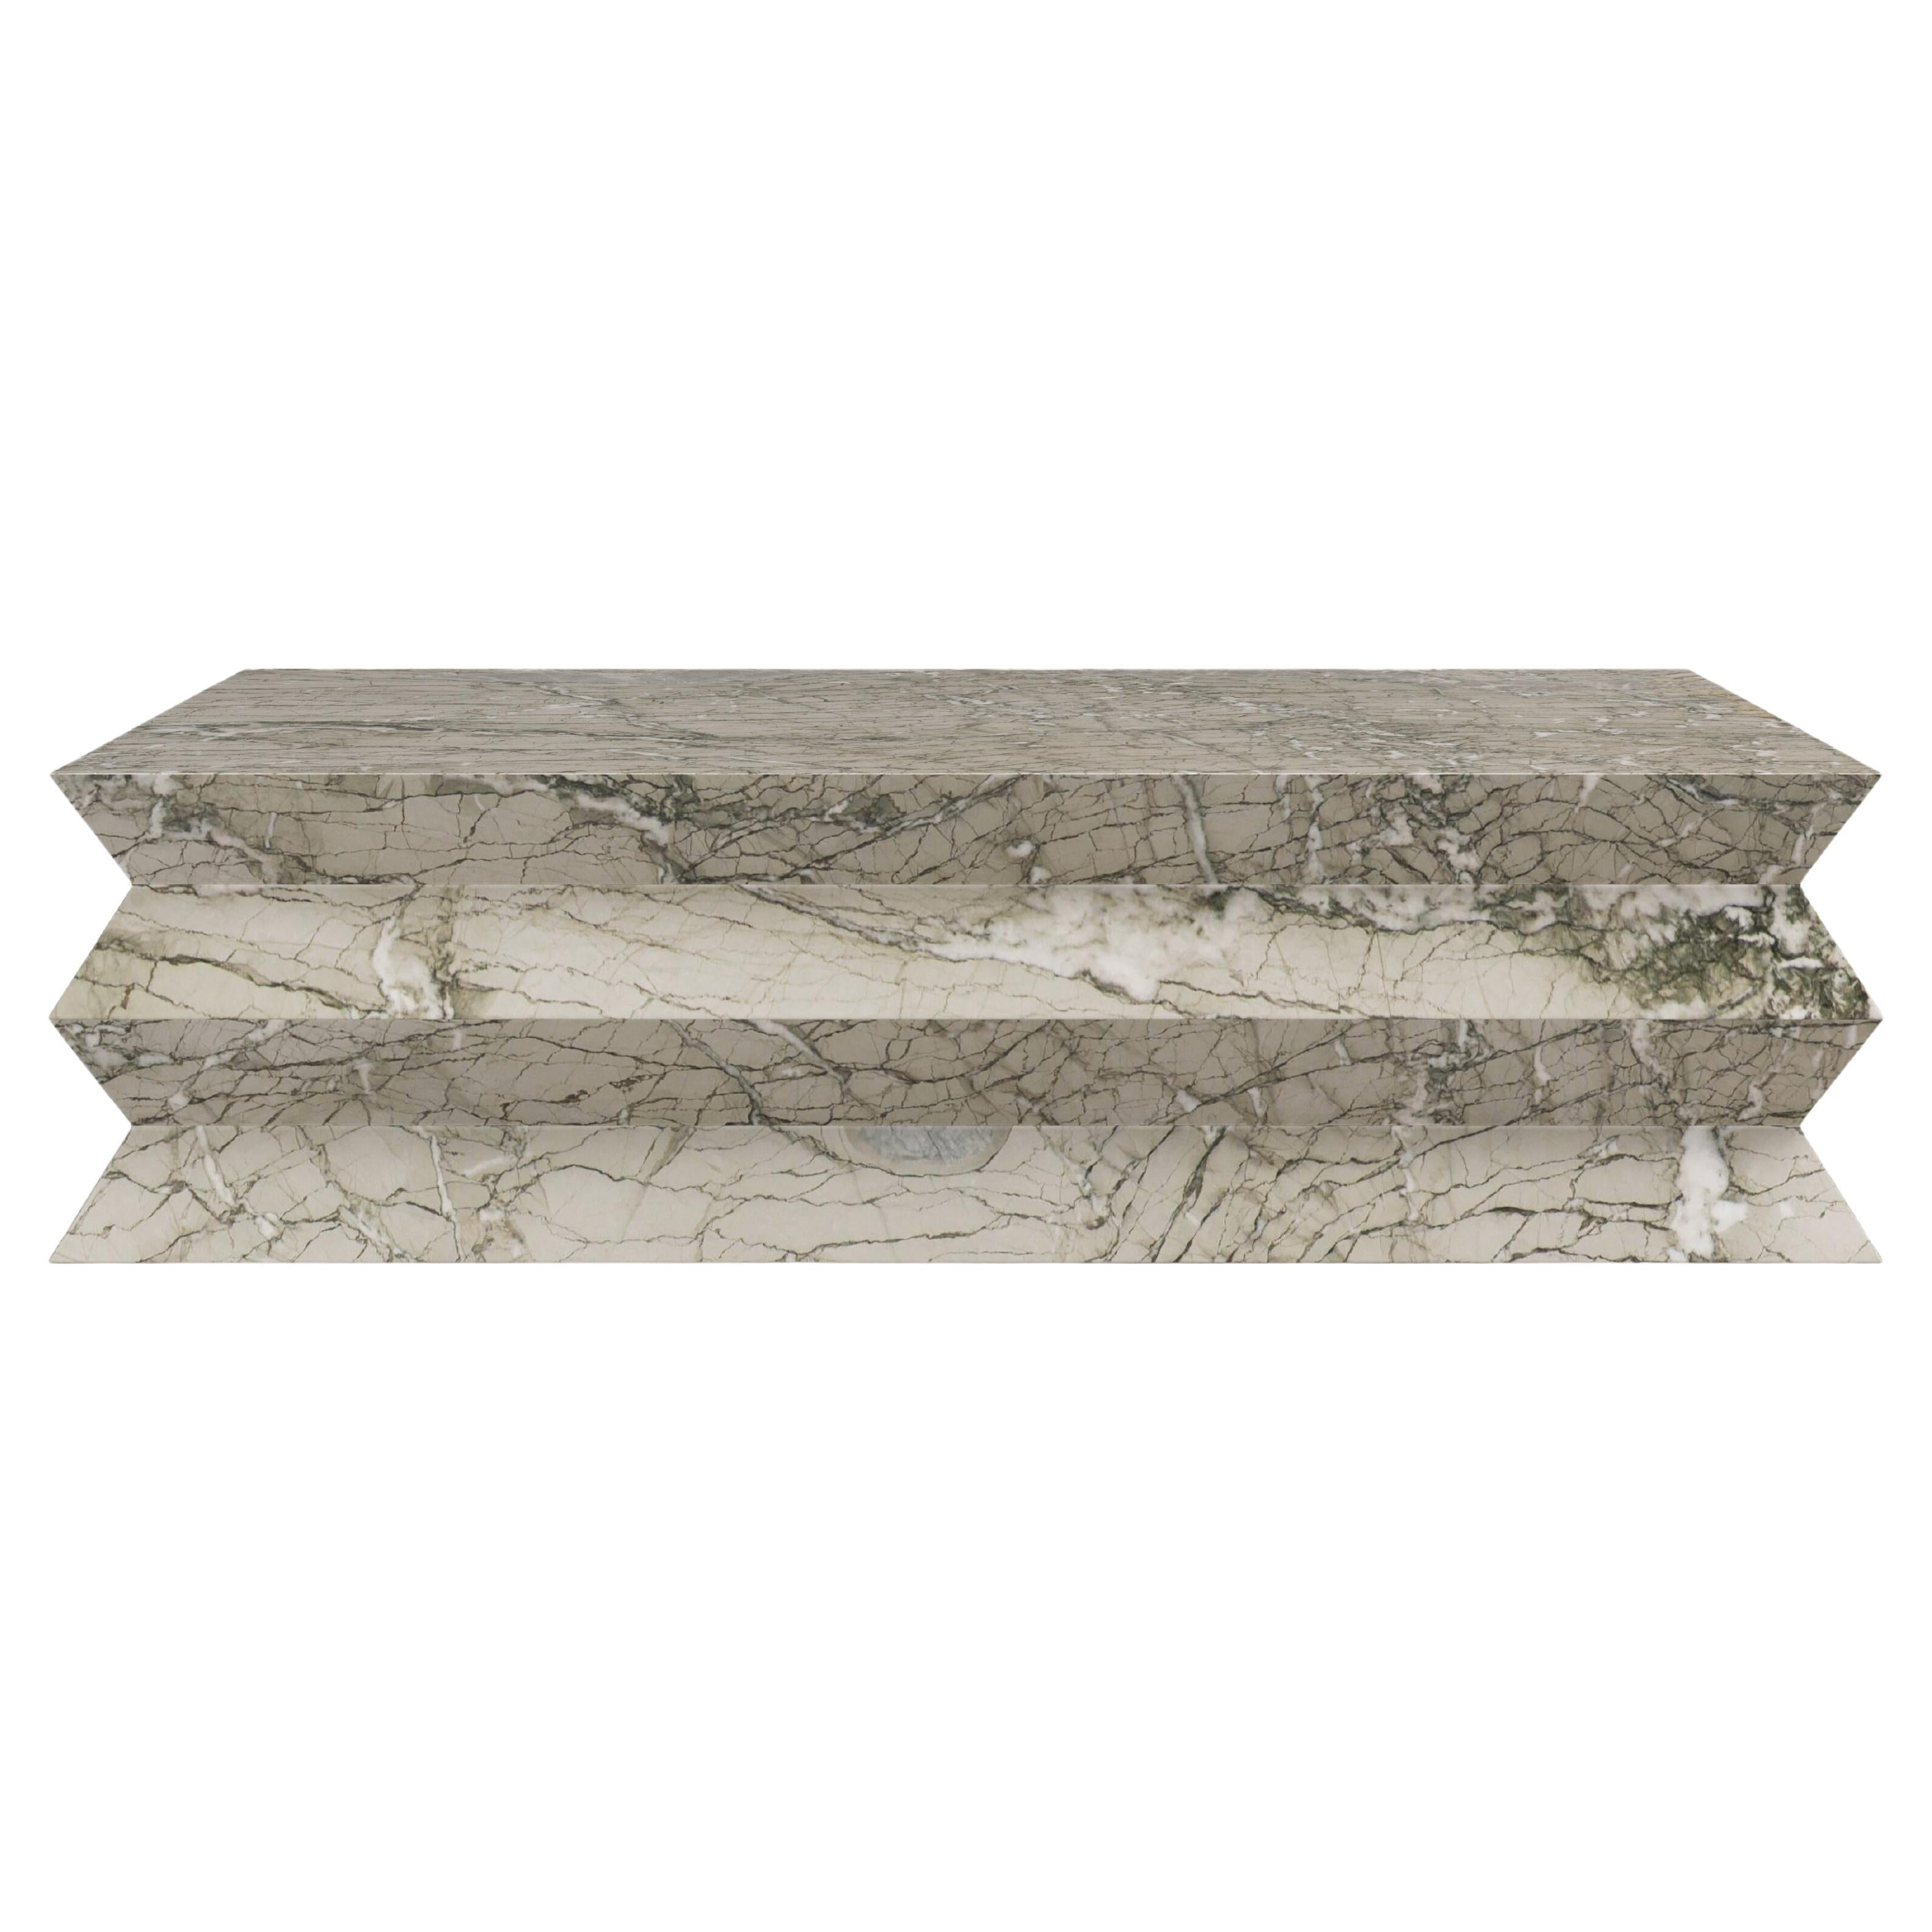 FORM(LA) table basse rectangulaire Grinza 48 po. (L) x 30 po. (L) x 16 po. (H) marbre Verde Antigua en vente